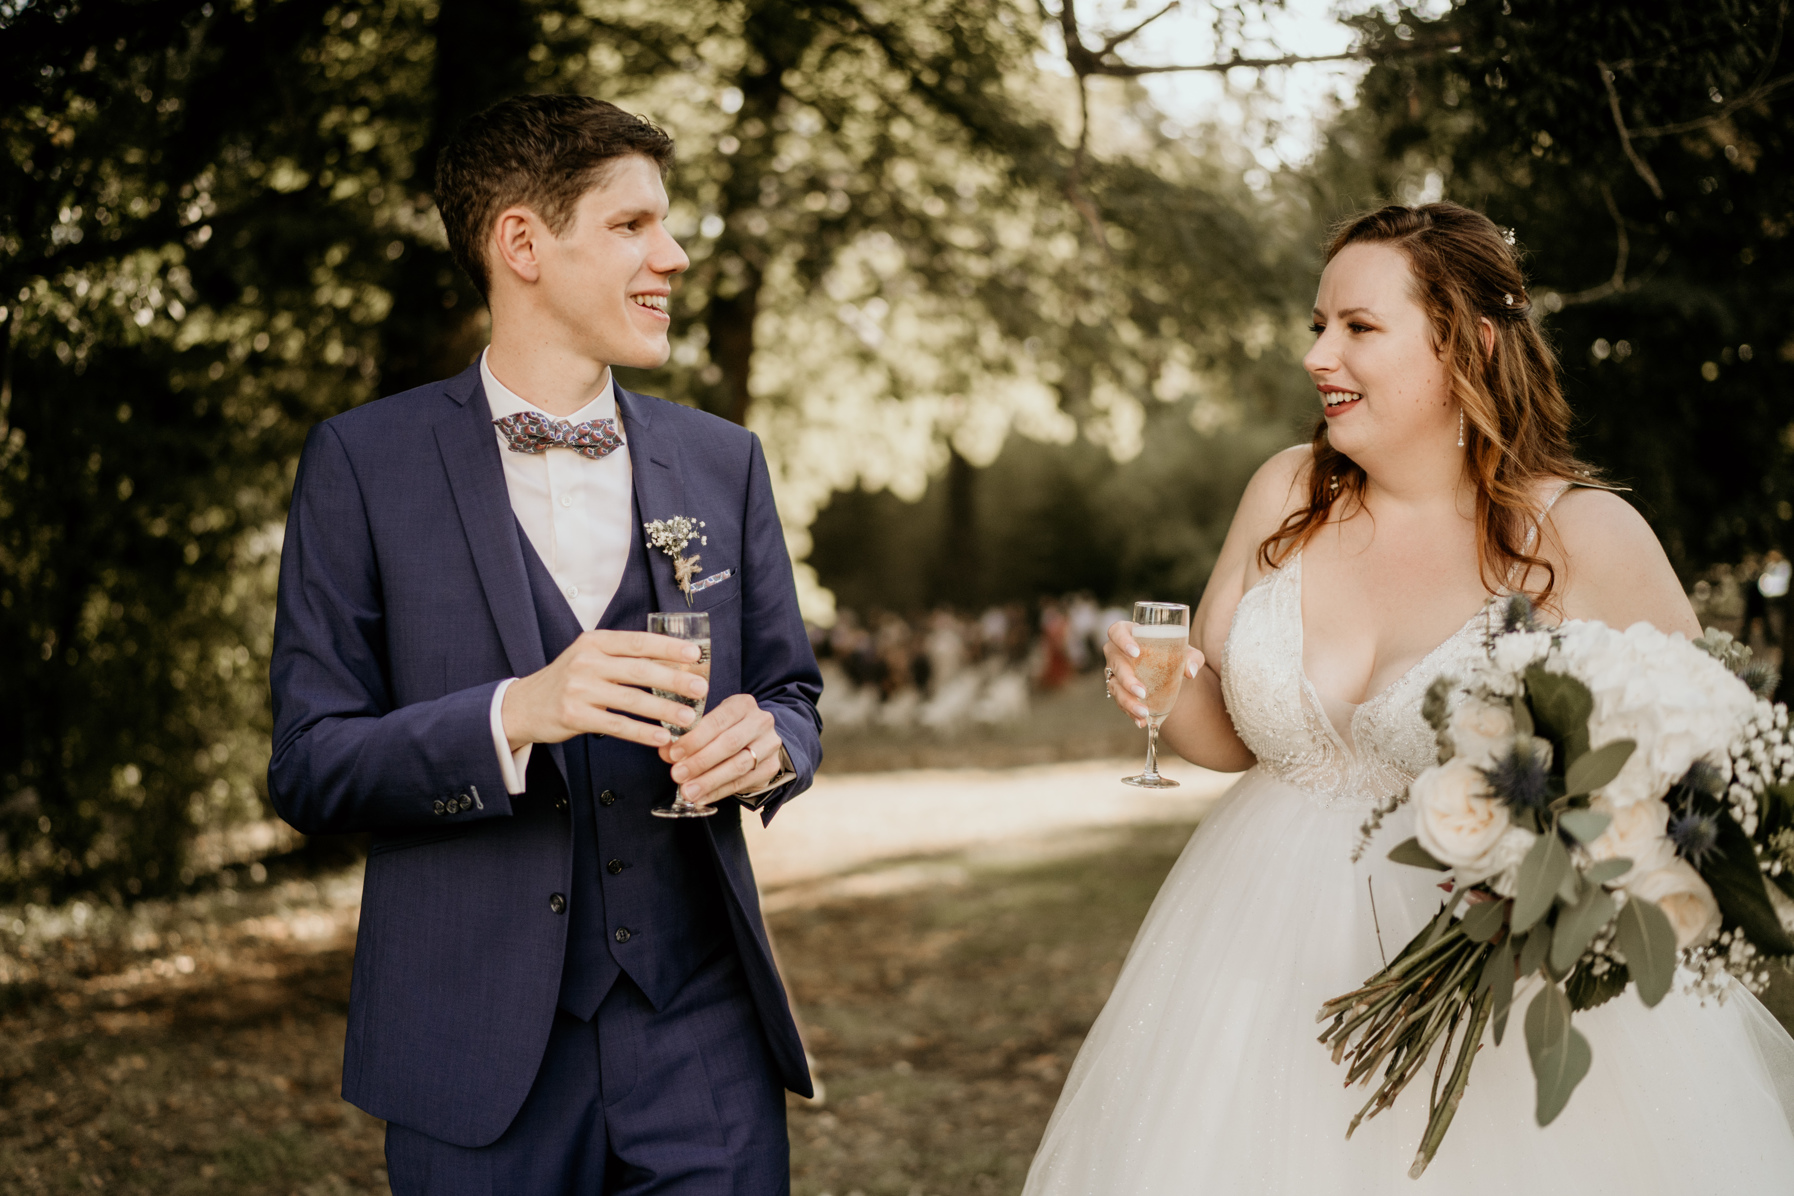 Choisir le champagne de votre mariage: trinquer après la cérémonie laïque